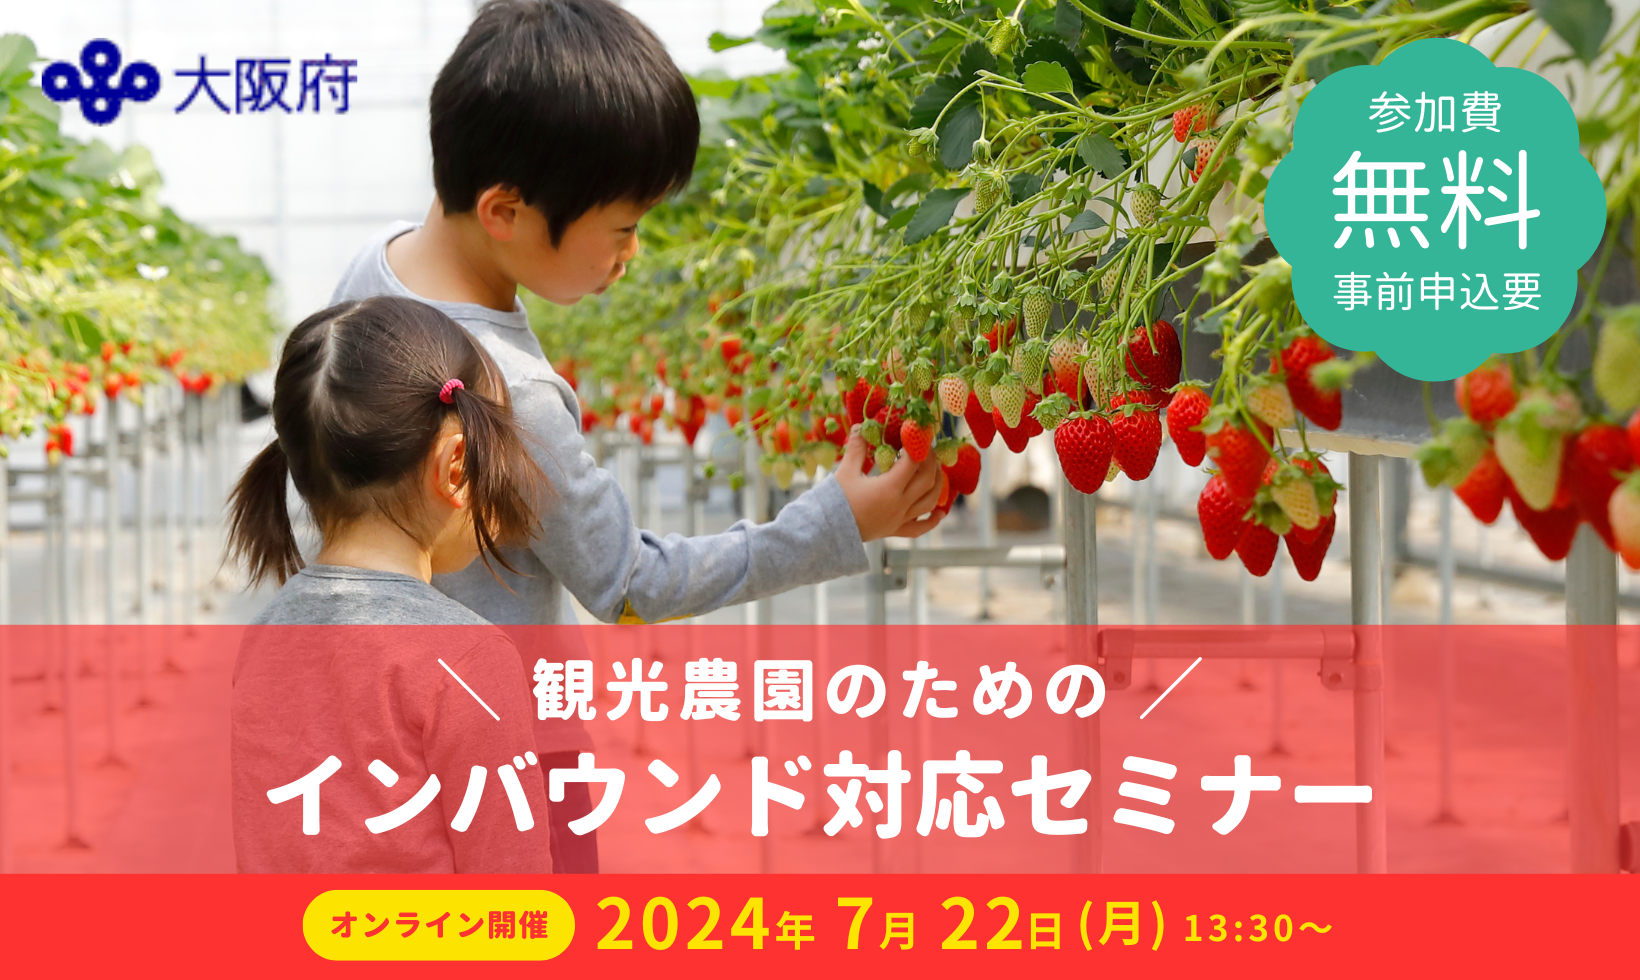 大阪府「観光農園のためのインバウンド対応セミナー」で講演します